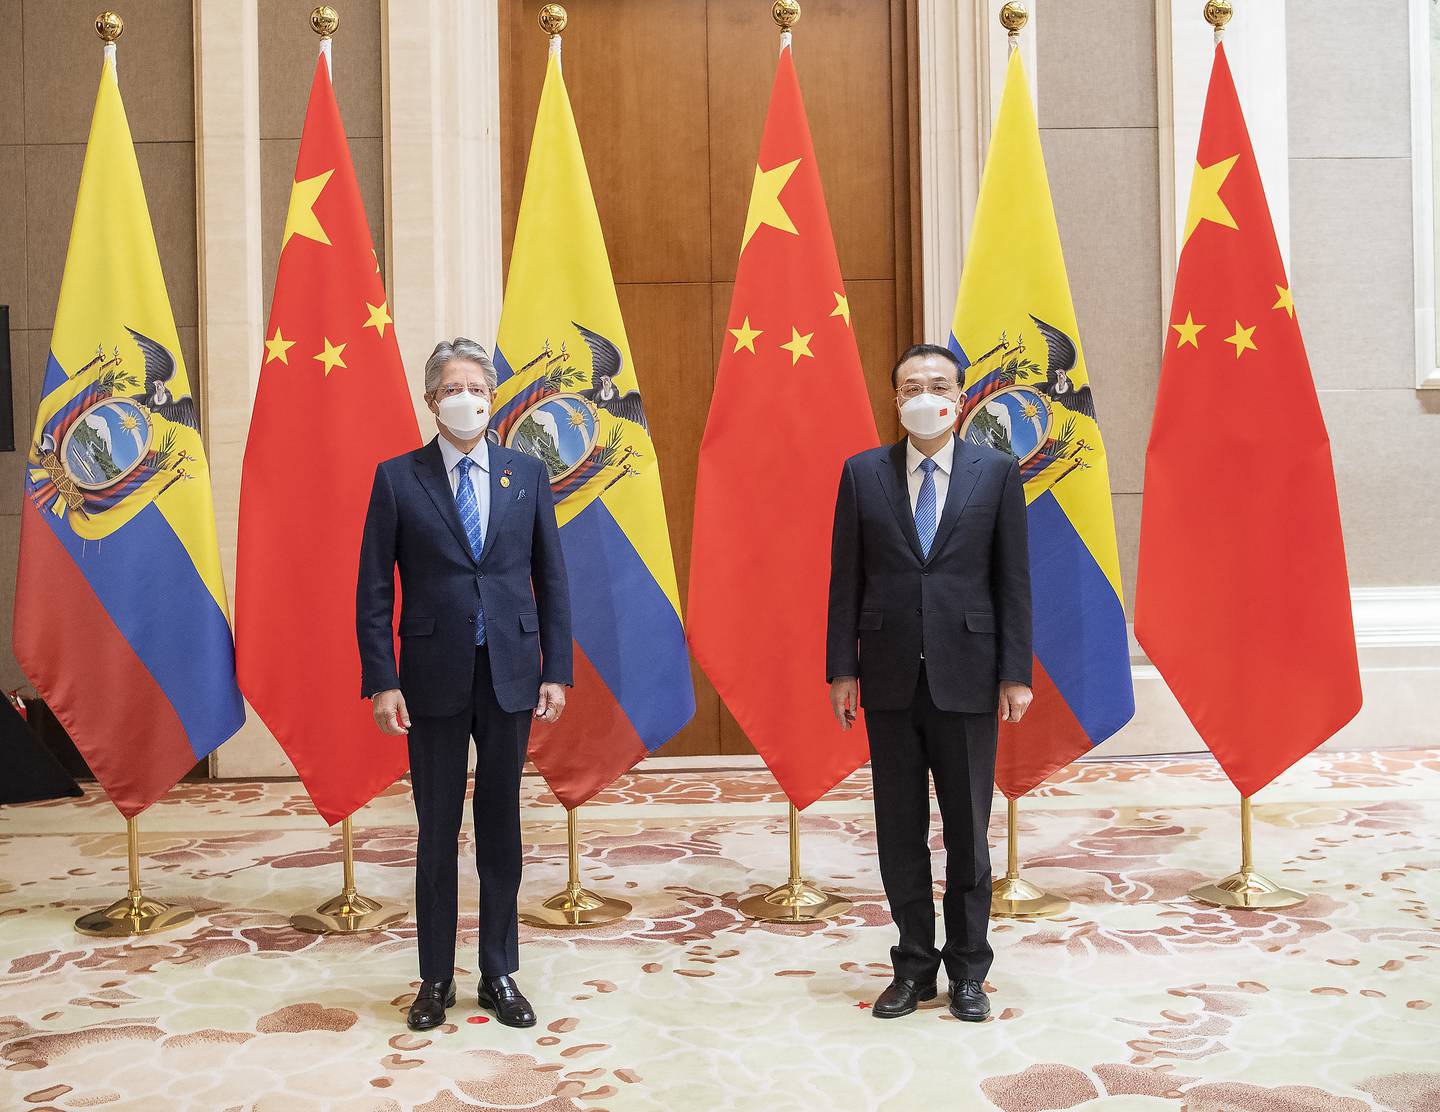 El presidente del Ecuador, Guillermo Lasso, en su visita oficial a la República Popular de China se reunió con el primer ministro chino Li Keqiang.